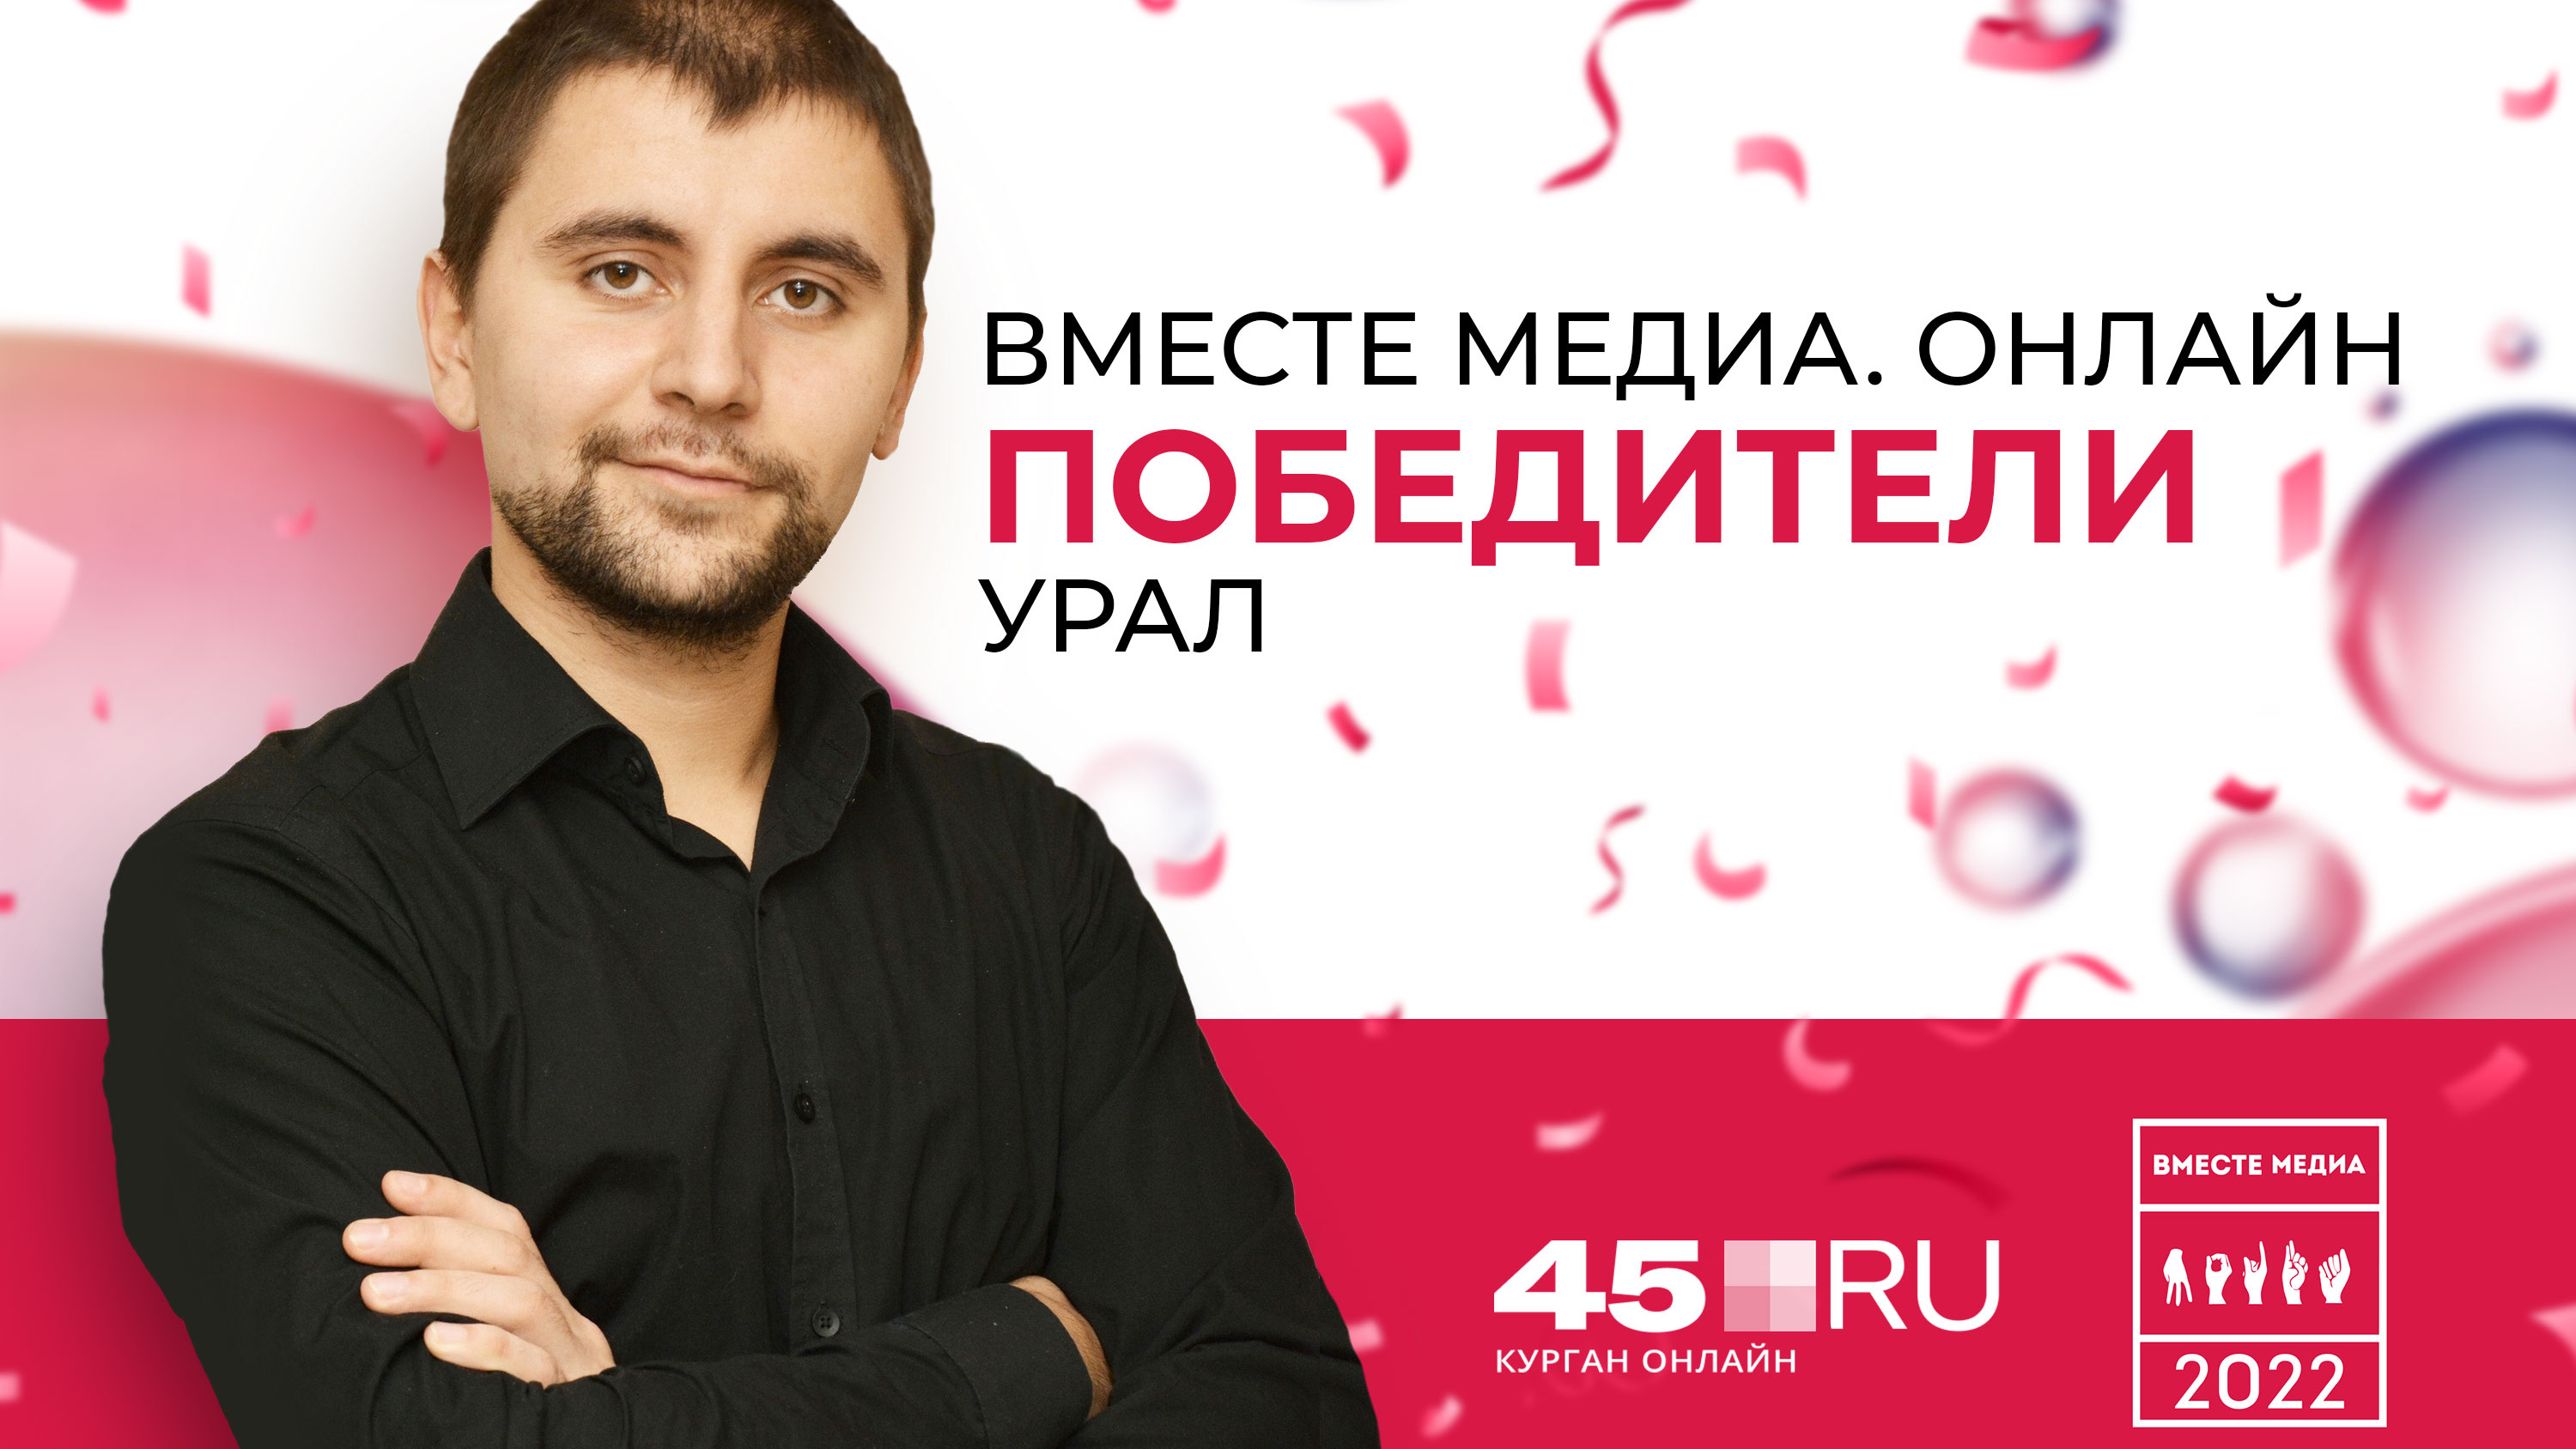 Корреспондент 45.RU стал призером журналистского конкурса «Вместе медиа. Онлайн»